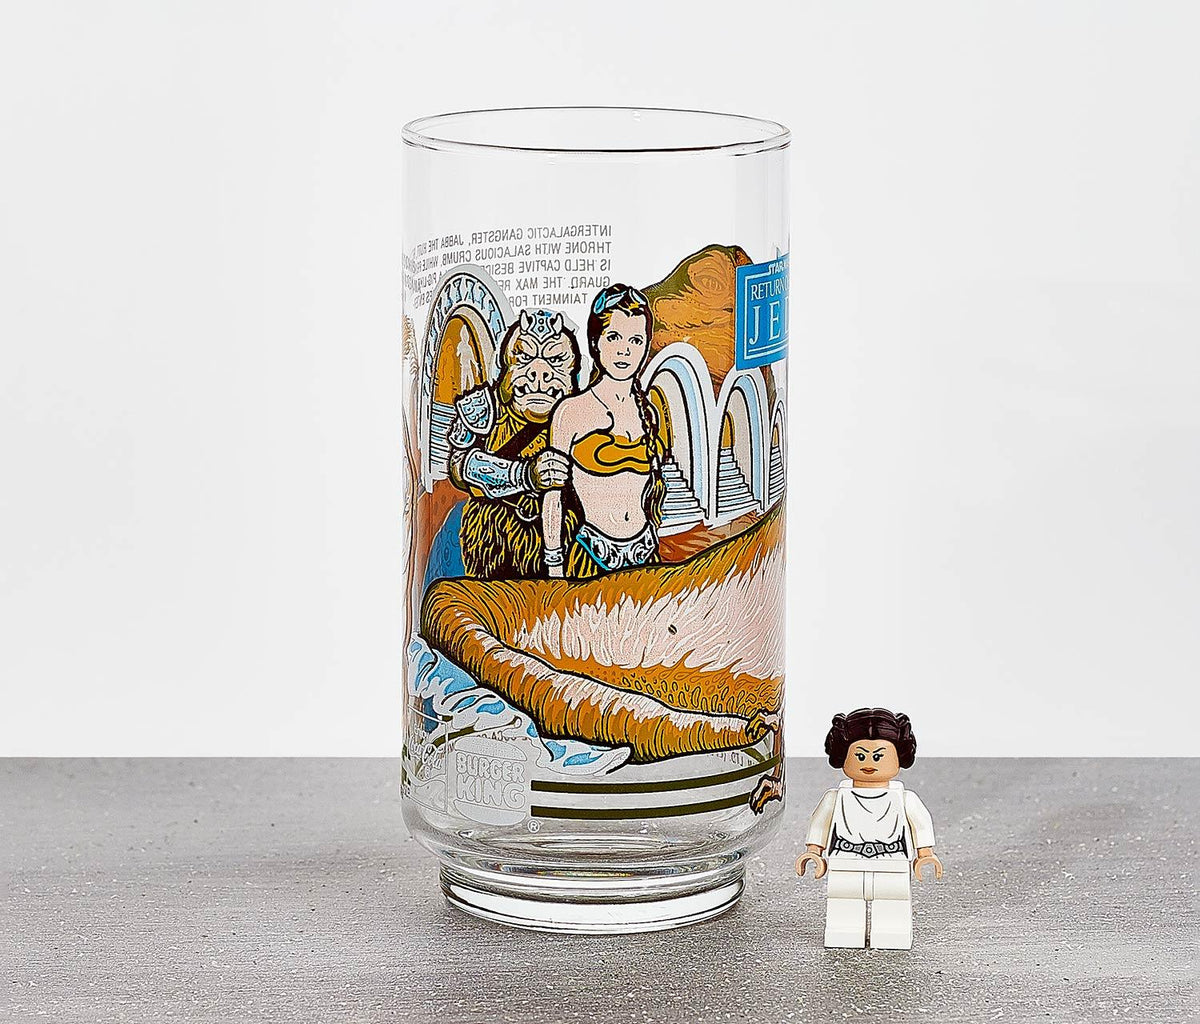 Star Wars Beer Glasses